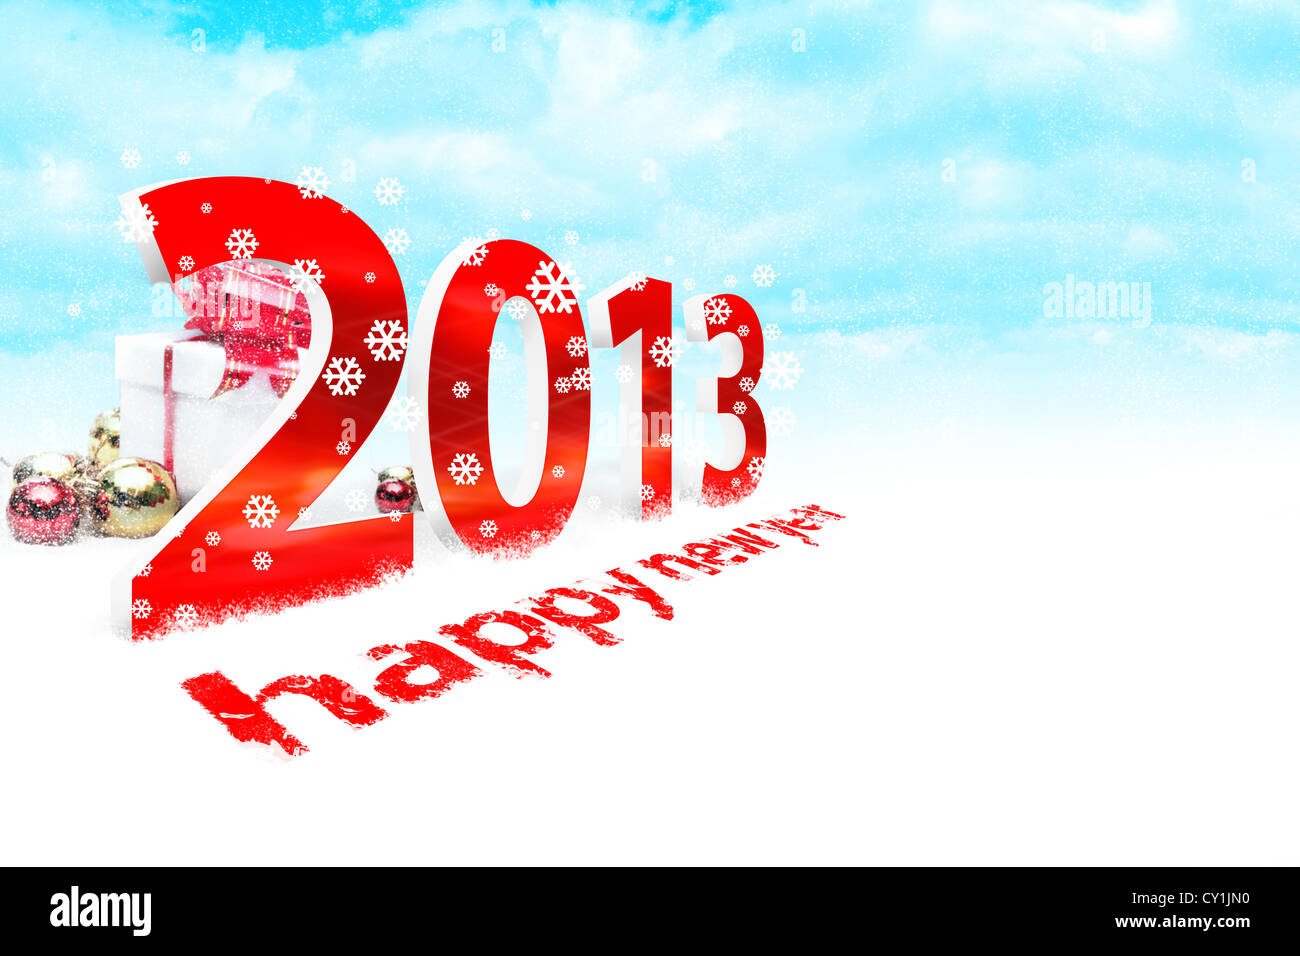 Ilustración del año nuevo 2013 con nieve Foto de stock